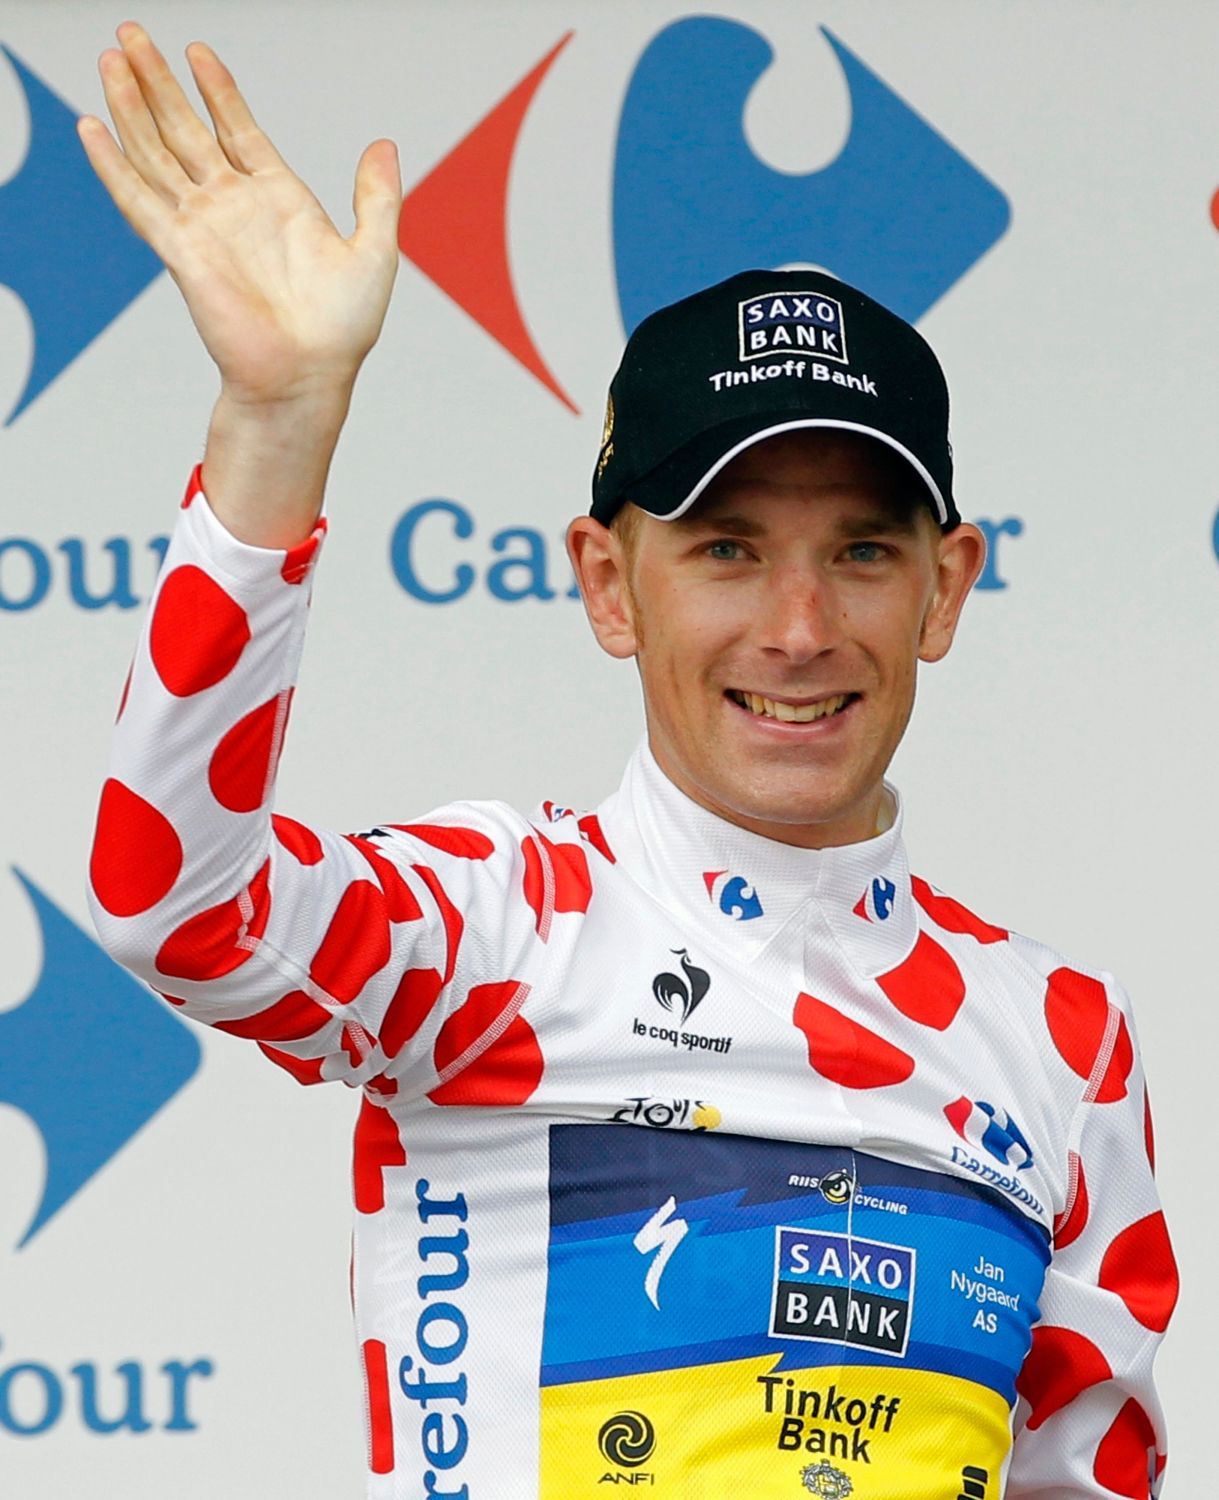 Dánský cyklista Daniel Mørkøv ze stáje Saxo Bank během třetí etapy Tour de France 2012.